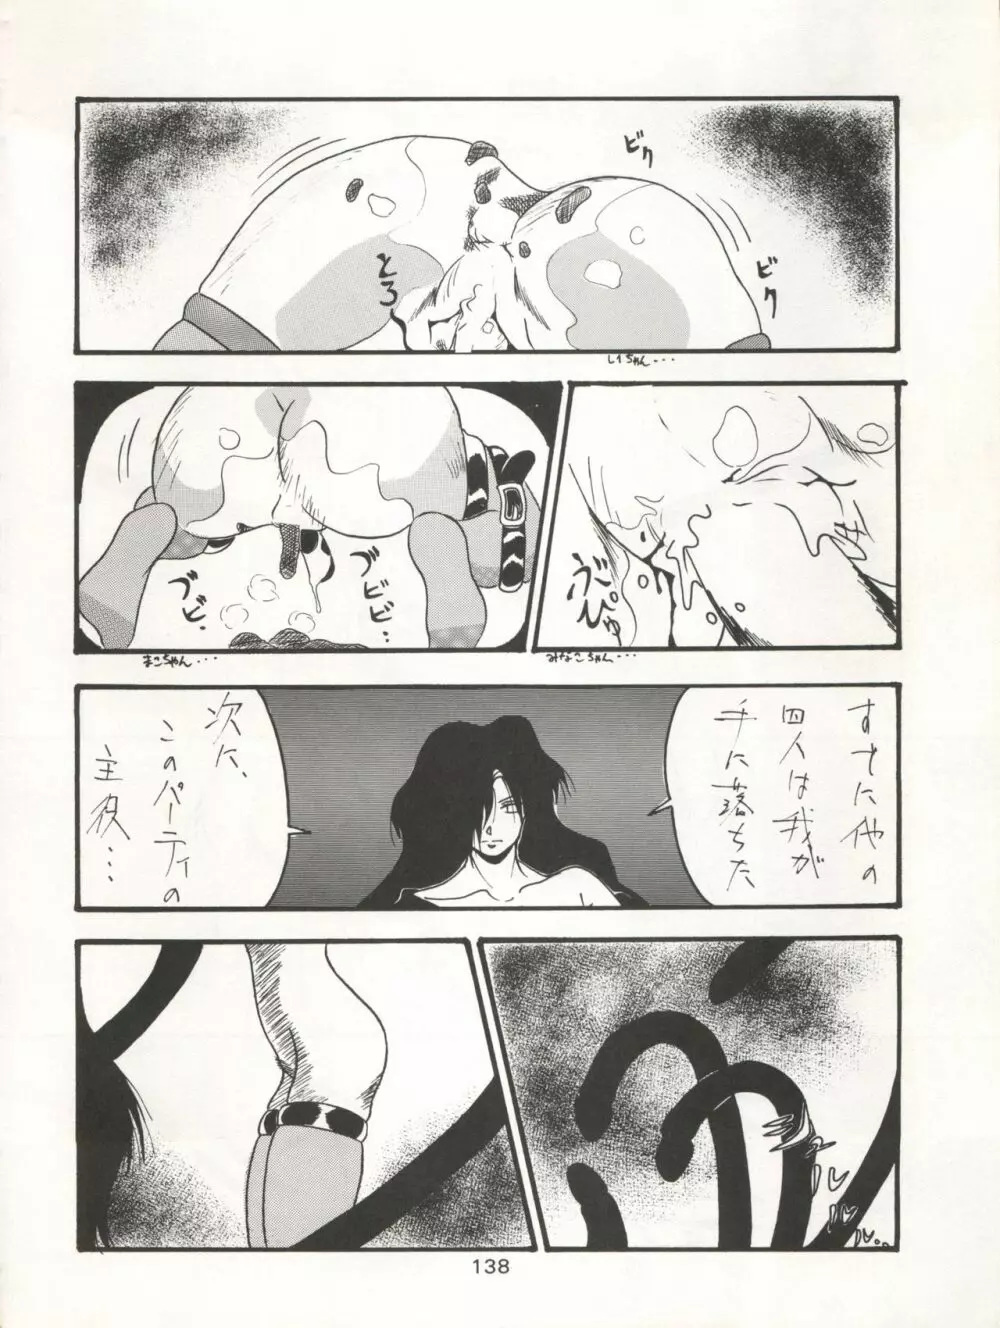 KATZE 7 上巻 - page139